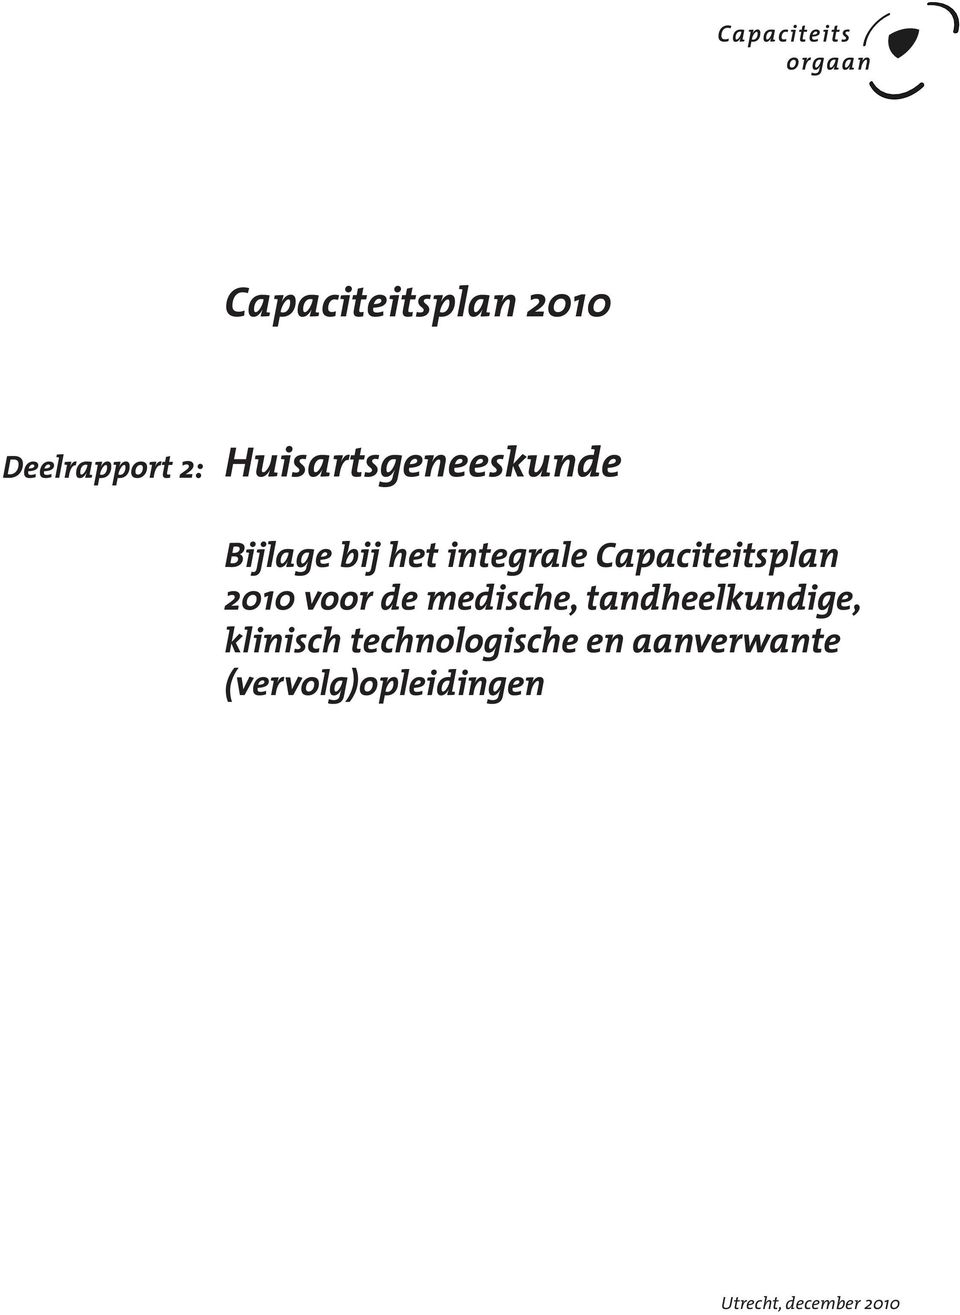 Capaciteitsplan 2010 voor de medische,